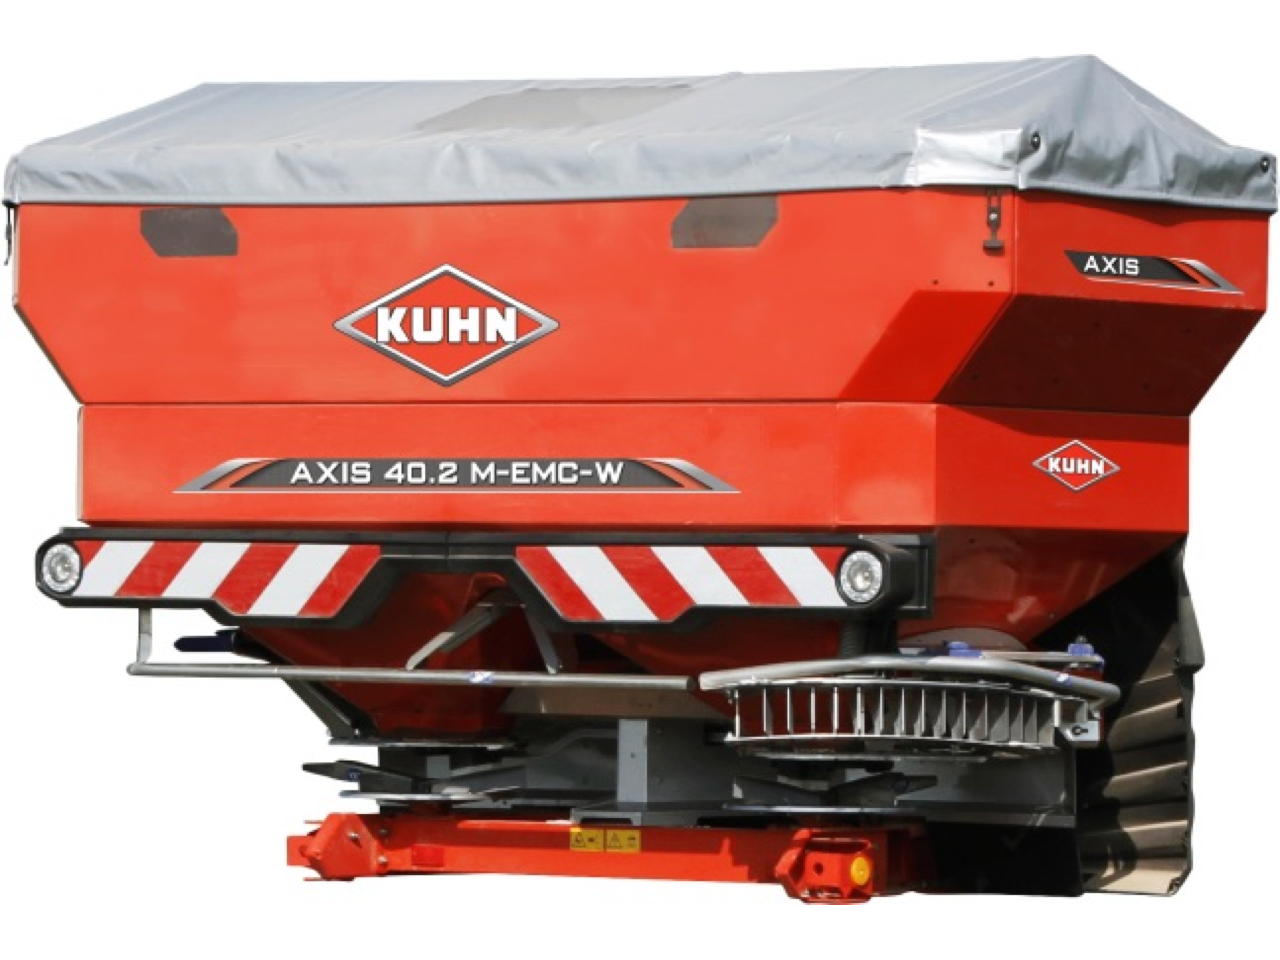 Kuhn Axis 50.2 H EMC W